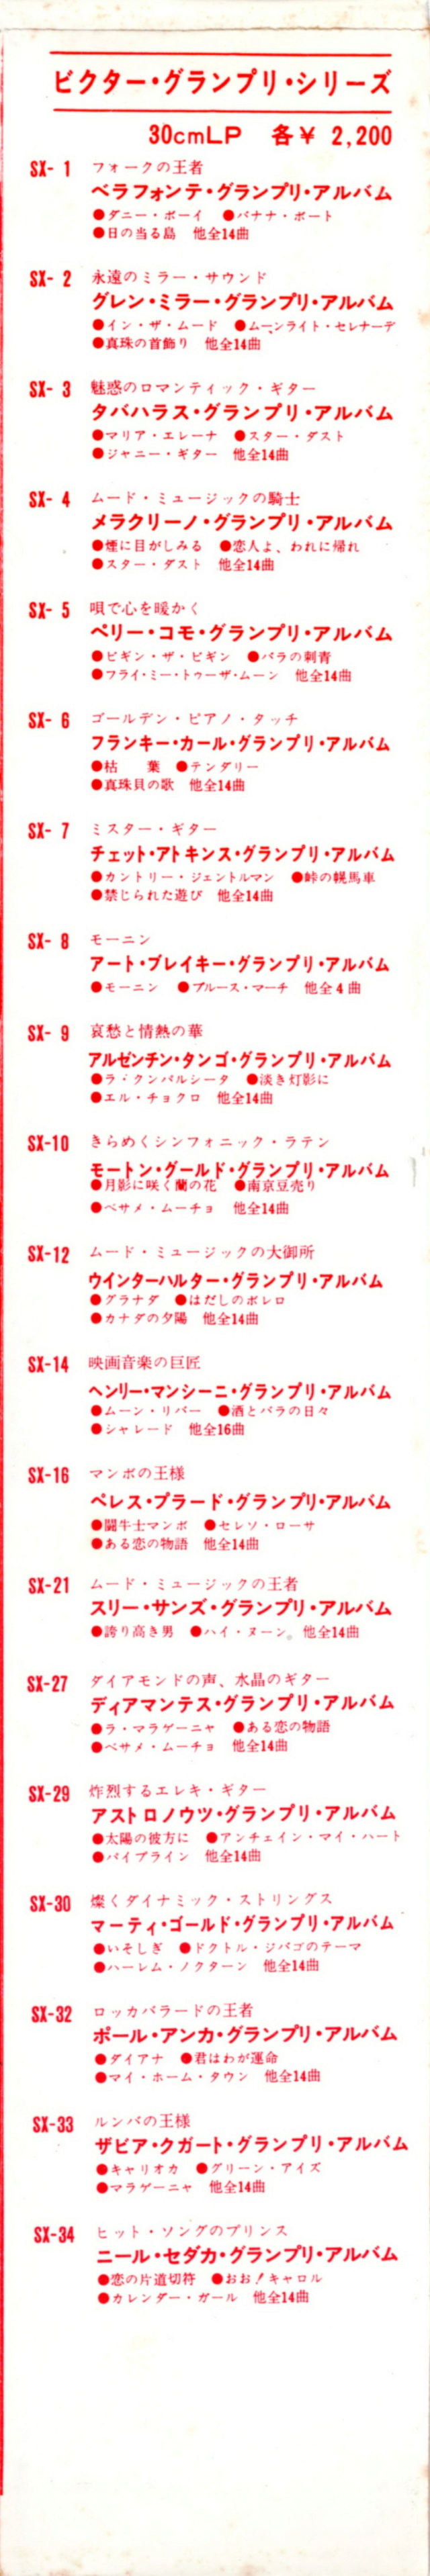 Discographie Japonaise - 4ème partie (33 T COMPILATION) - Page 3 Jpn_2984